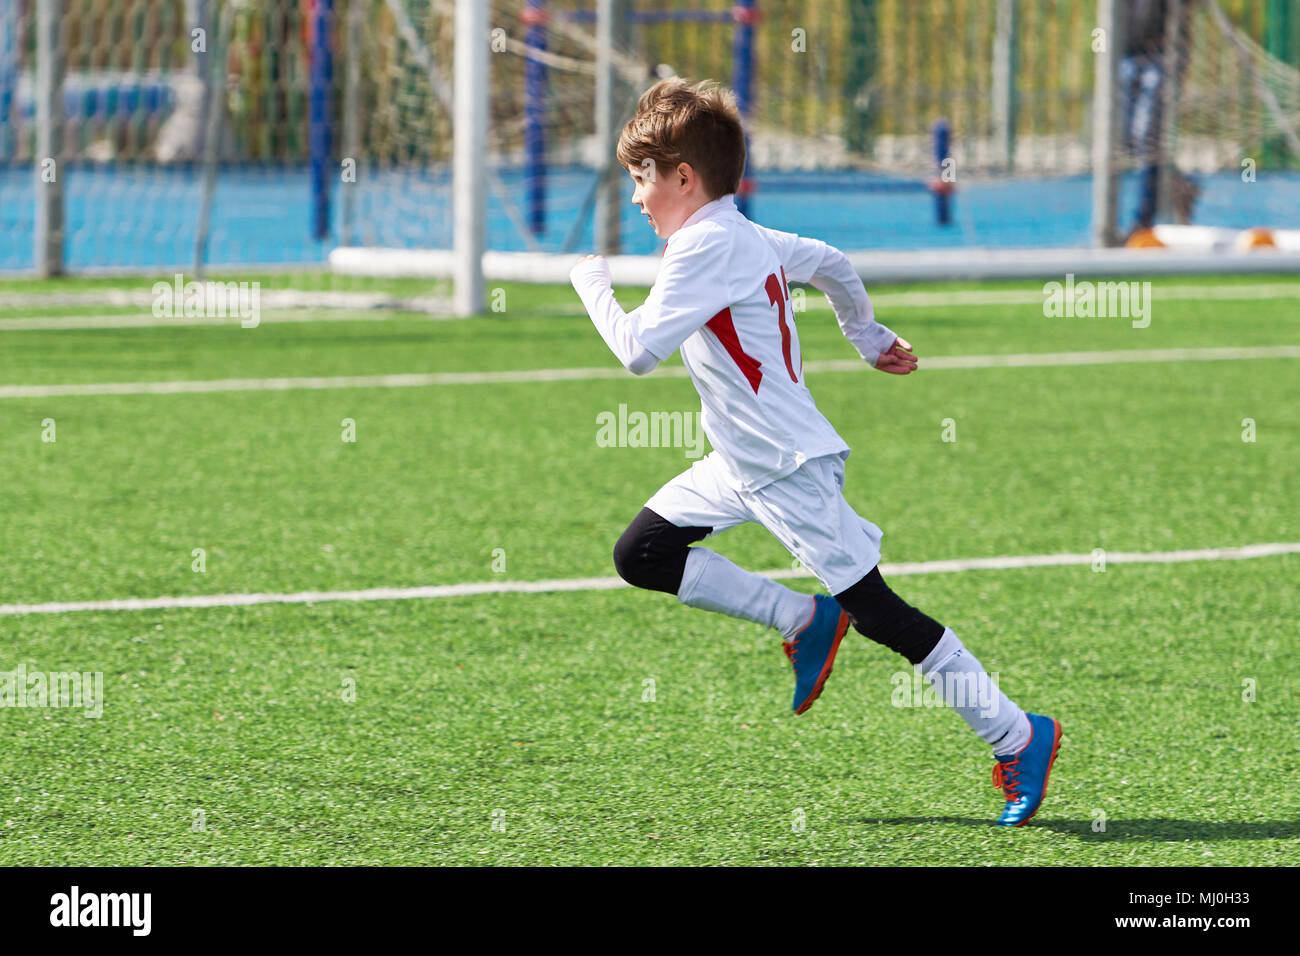 Laufen junge Fußball-Training auf dem Fußballplatz Stockfoto